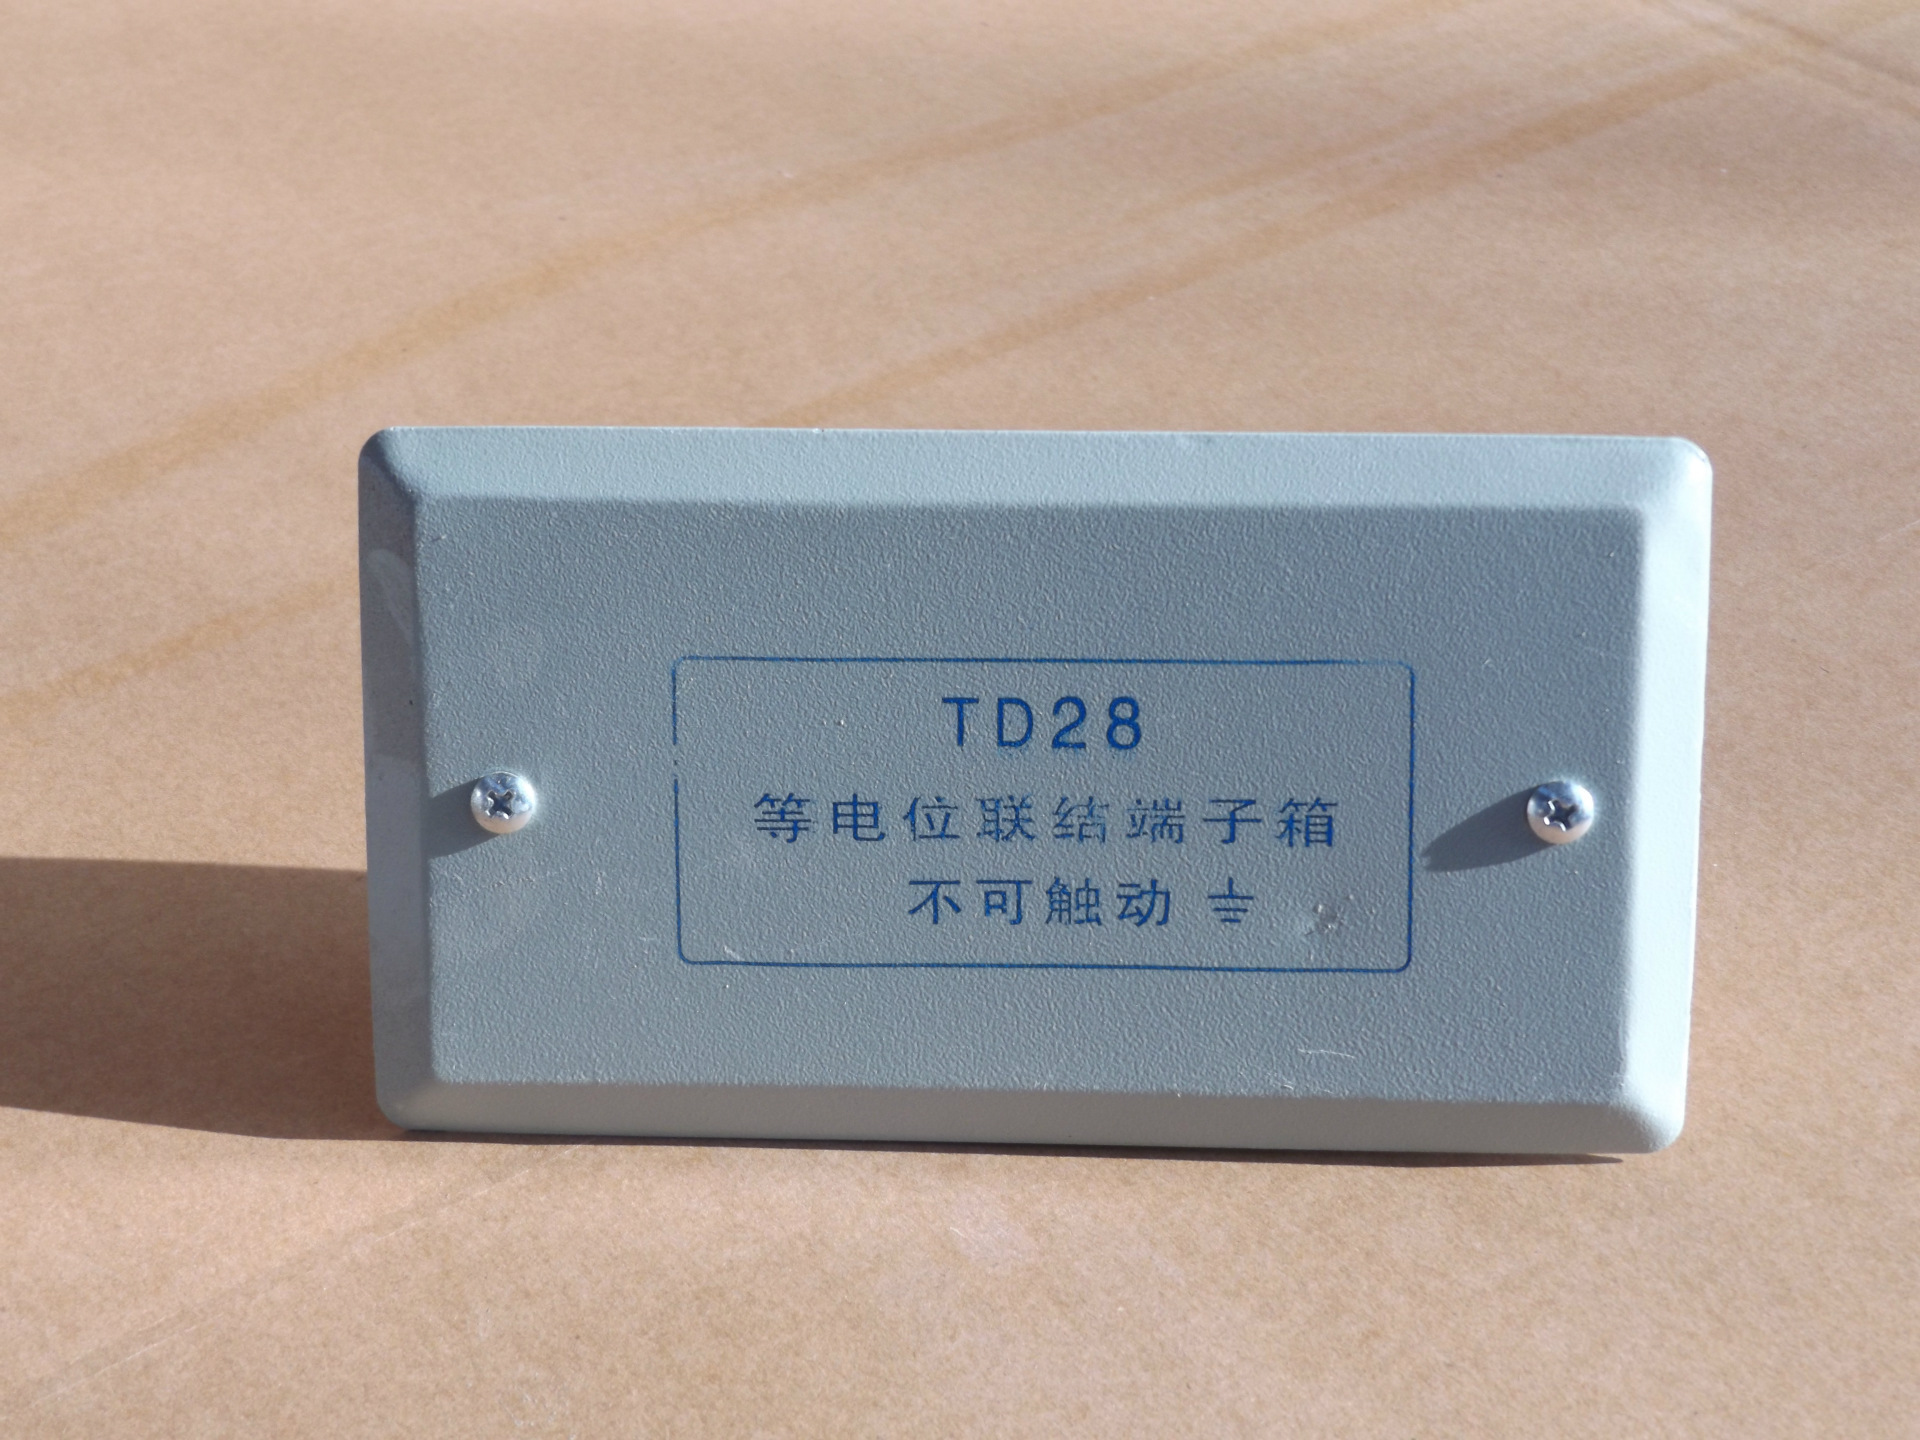 td28等电位联结端子箱(小型) 智能照明等电位配电箱